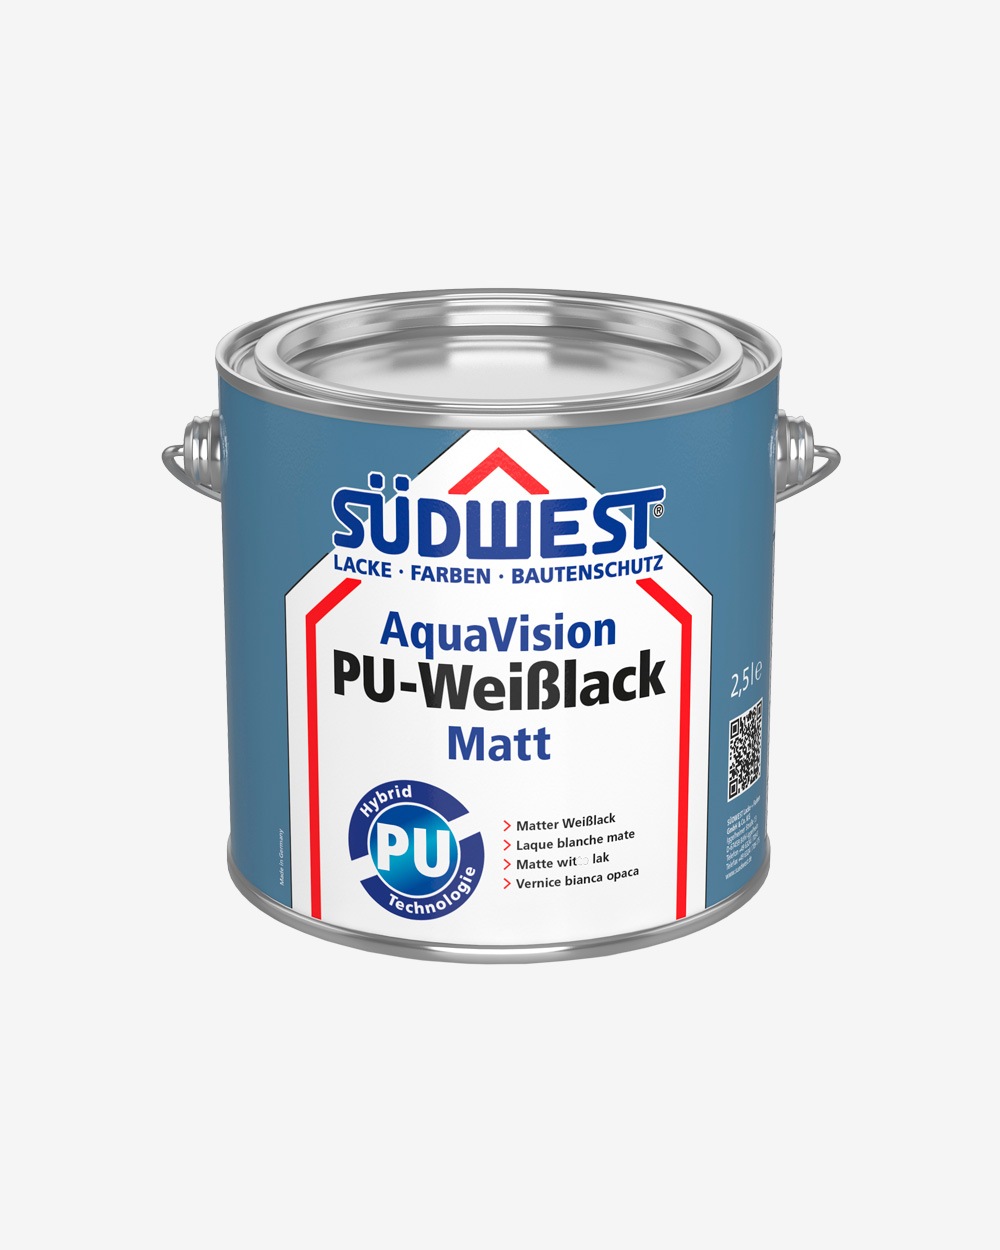 Se AquaVision PU-weisslack - Matt - 0,75 L hos Picment.dk